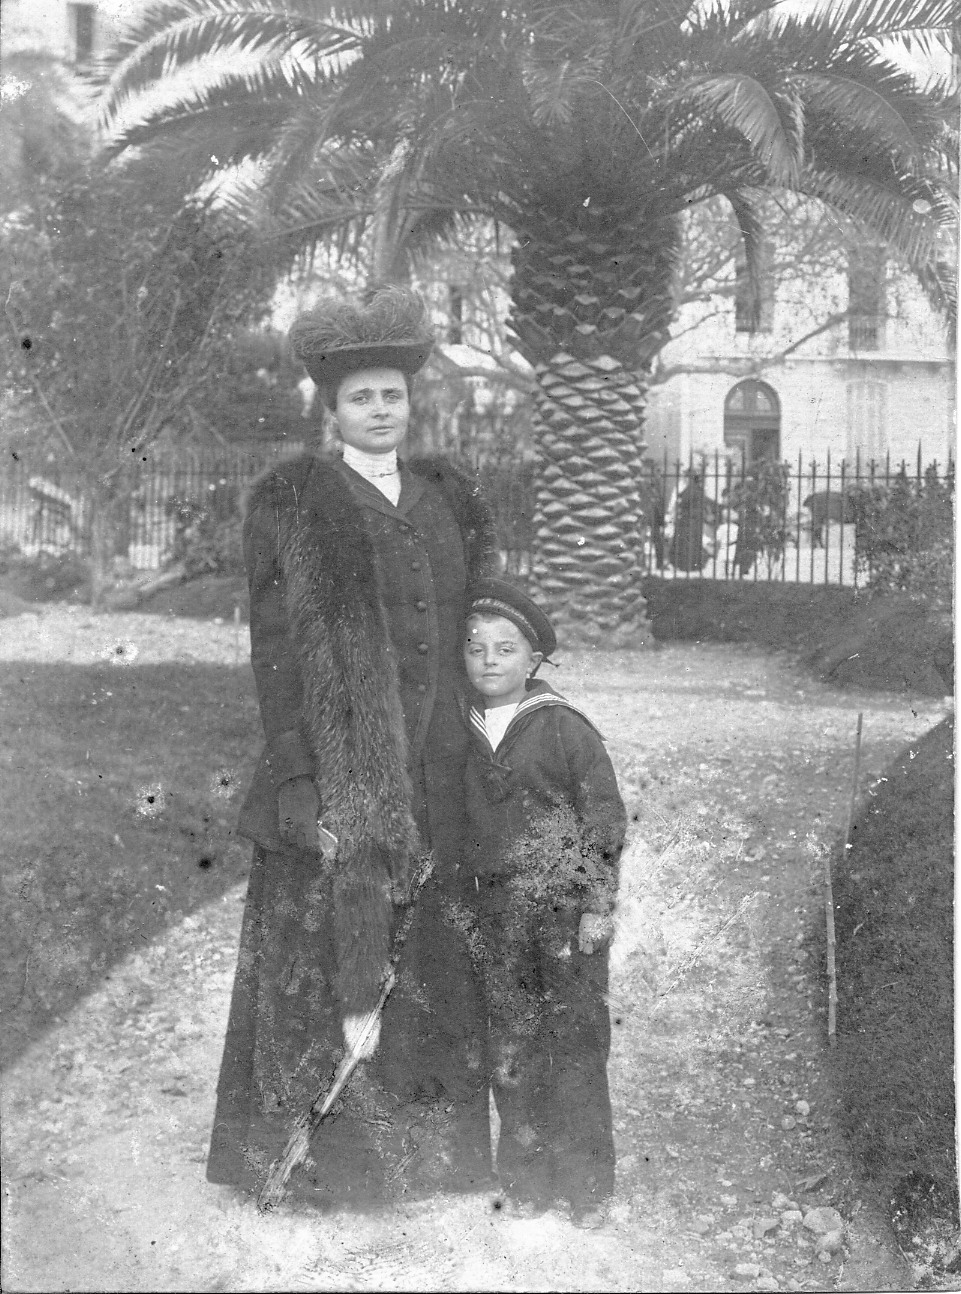 Fotografia archiwalna, czarno-biała, wykonana około 1905 roku, przedstawia Marię Potocką, późniejszą Adamową Zamoyską, z synem Michałem. Kobieta w czarnej, długiej spódnicy i żakiecie z narzuconą futrzaną etolą i bogato zdobionym kapeluszu. Przy niej, przytulony, stoi chłopiec, ubrany w ciemny, stylizowany na marynarski strój. W tle fragmenty budynków i okazała palma.